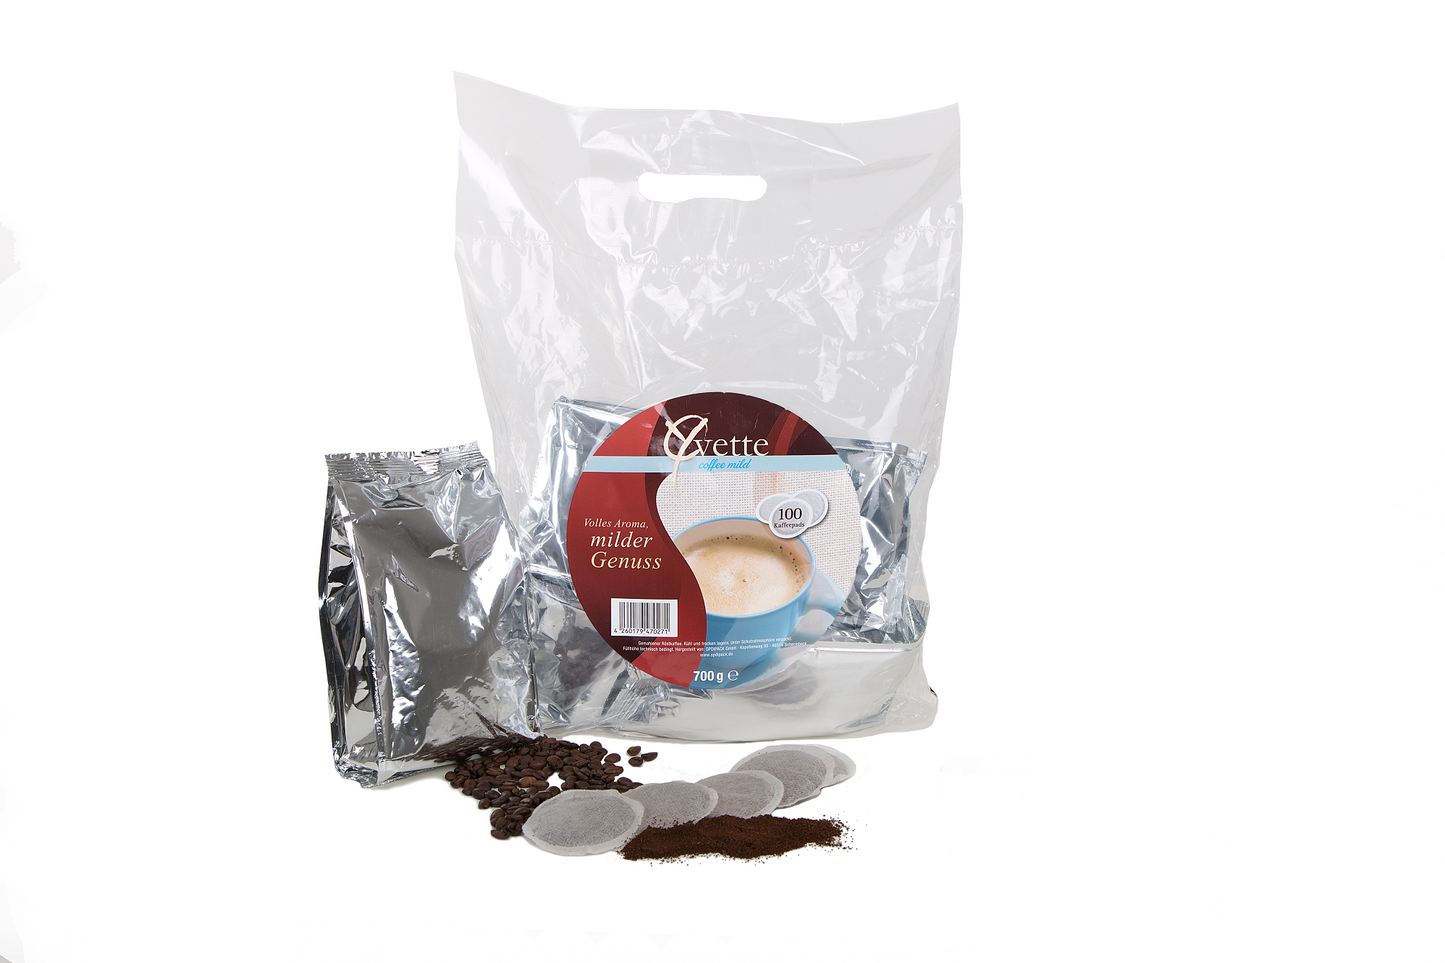 Yvette Kaffeepads Vorratspack Maxipack 100 Stück – 4x 25 Pads (Kaffee, sanft mit mildem Geschmack), geeignet für Senseo Maschinen